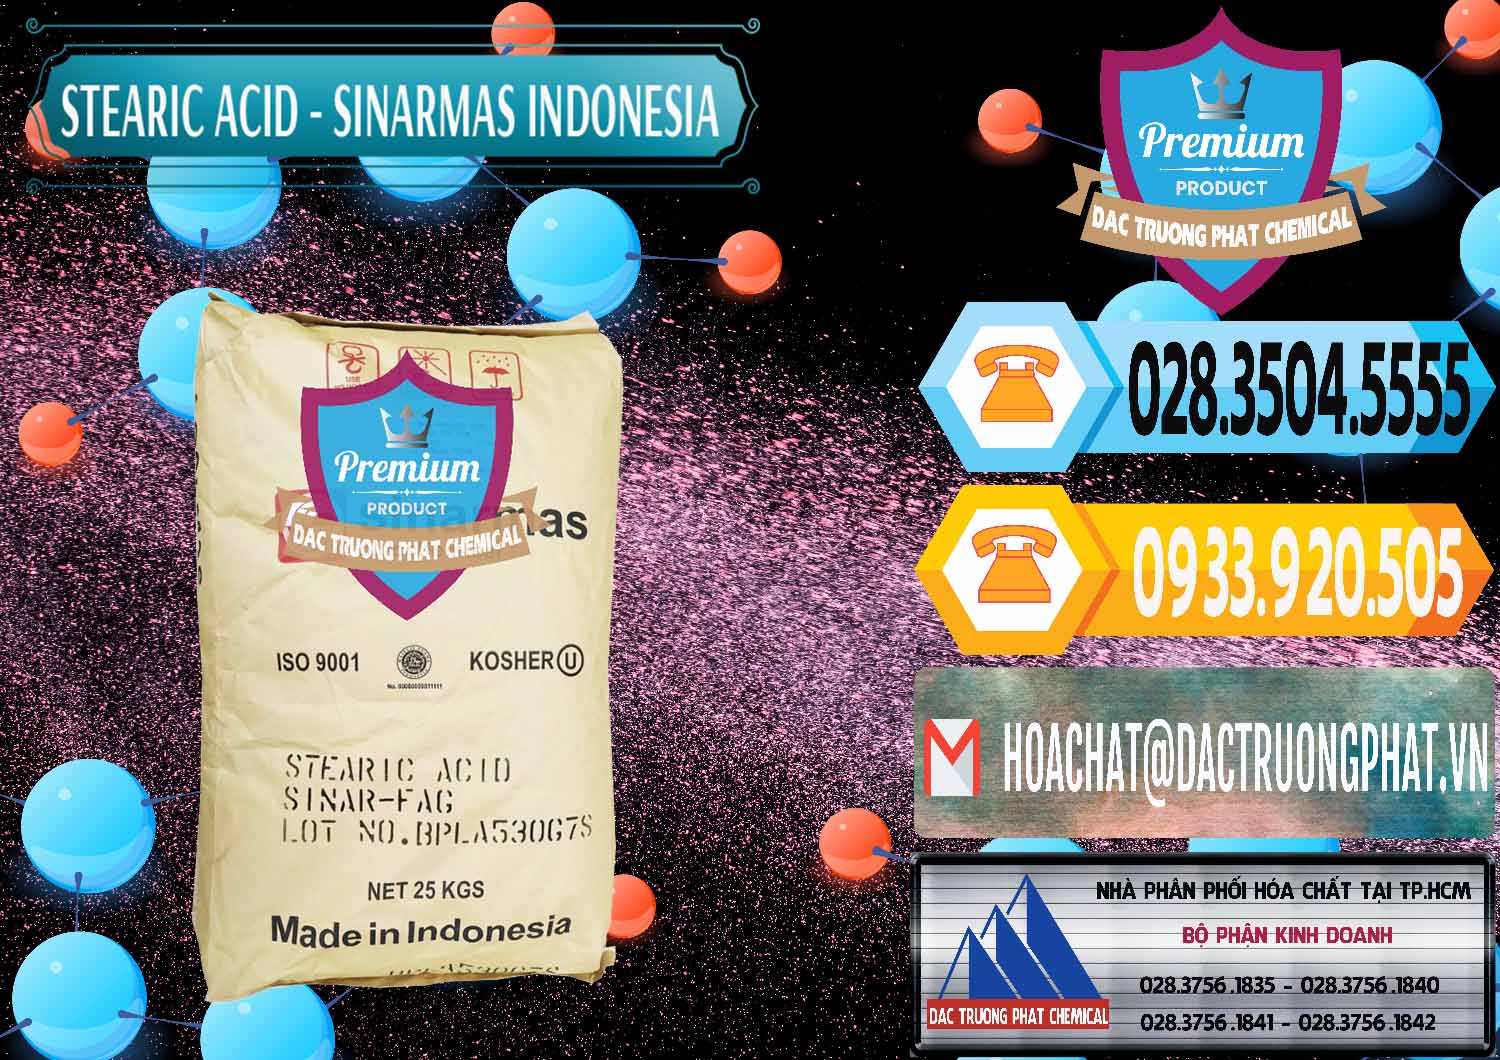 Nơi chuyên bán ( phân phối ) Axit Stearic - Stearic Acid Sinarmas Indonesia - 0389 - Đơn vị nhập khẩu _ phân phối hóa chất tại TP.HCM - hoachattayrua.net